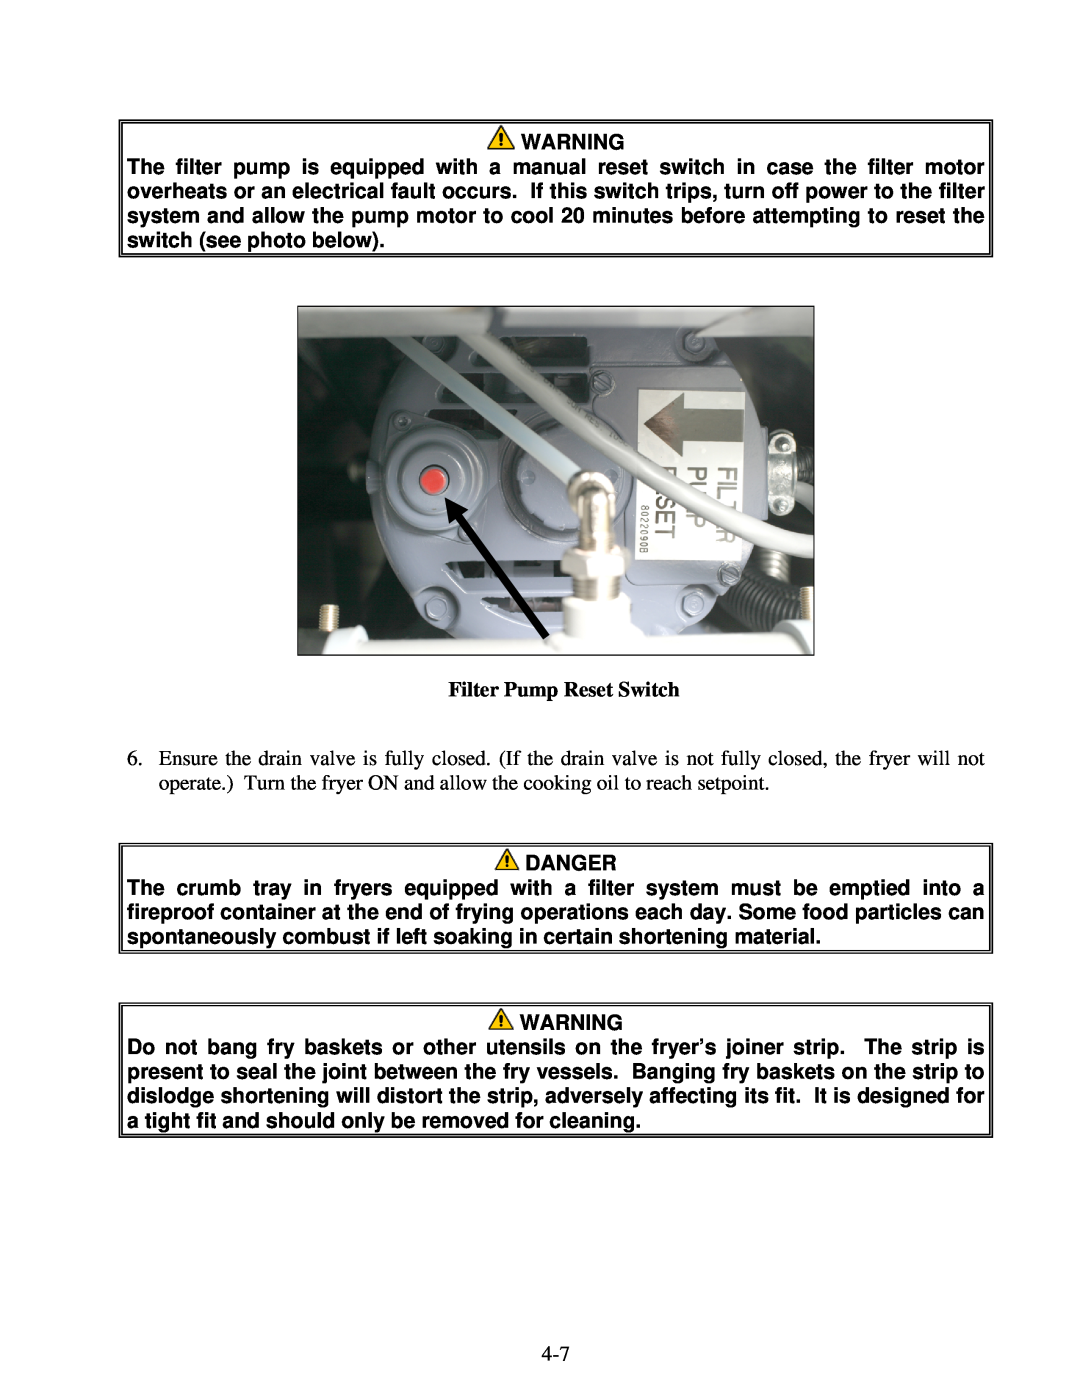 Frymaster H55 operation manual Danger 